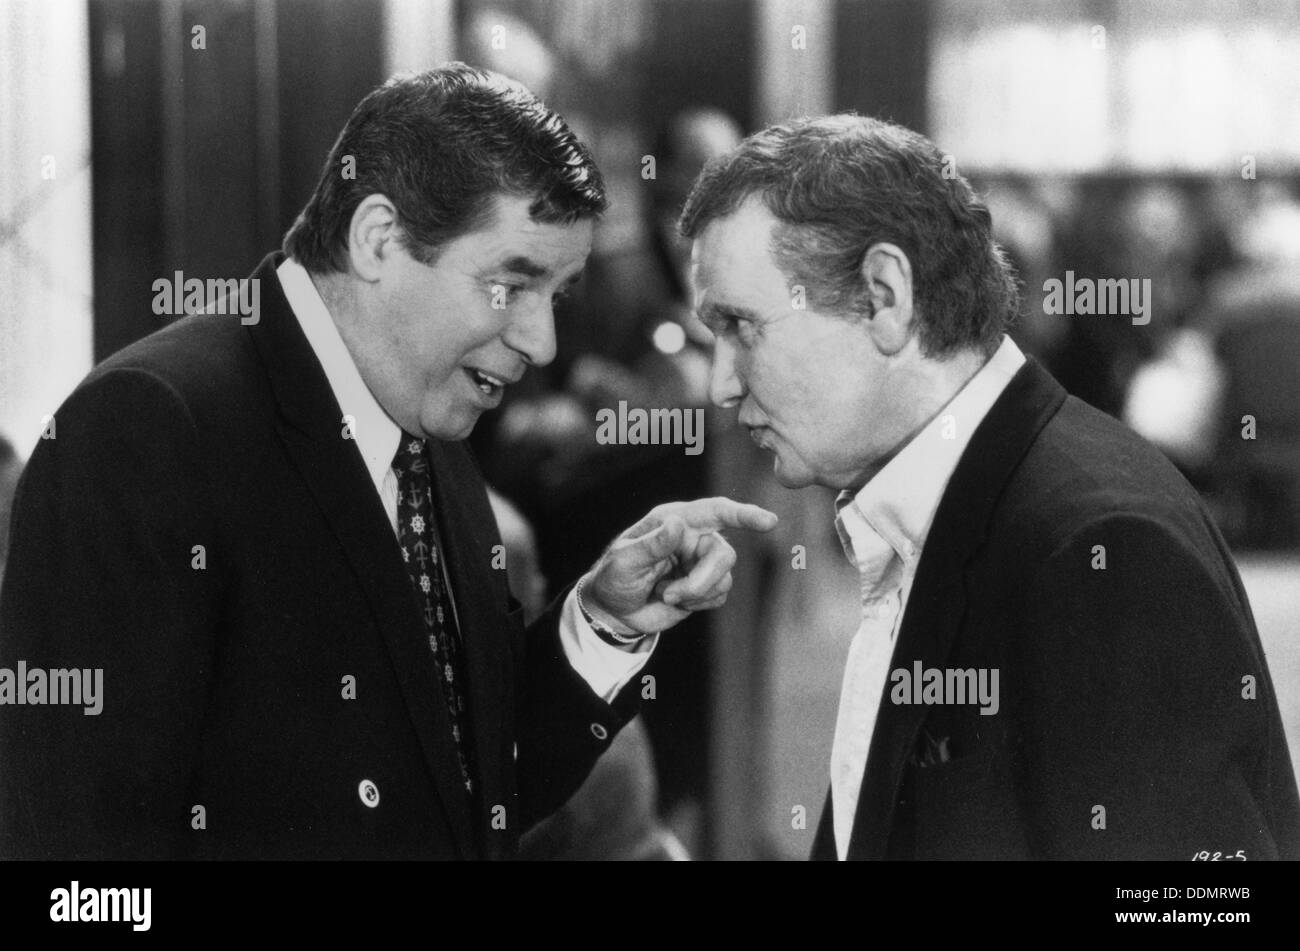 Billy Crystal (1947- ) et de Jerry Lewis (1926- ), les acteurs américains, 1992. Artiste : Inconnu Banque D'Images